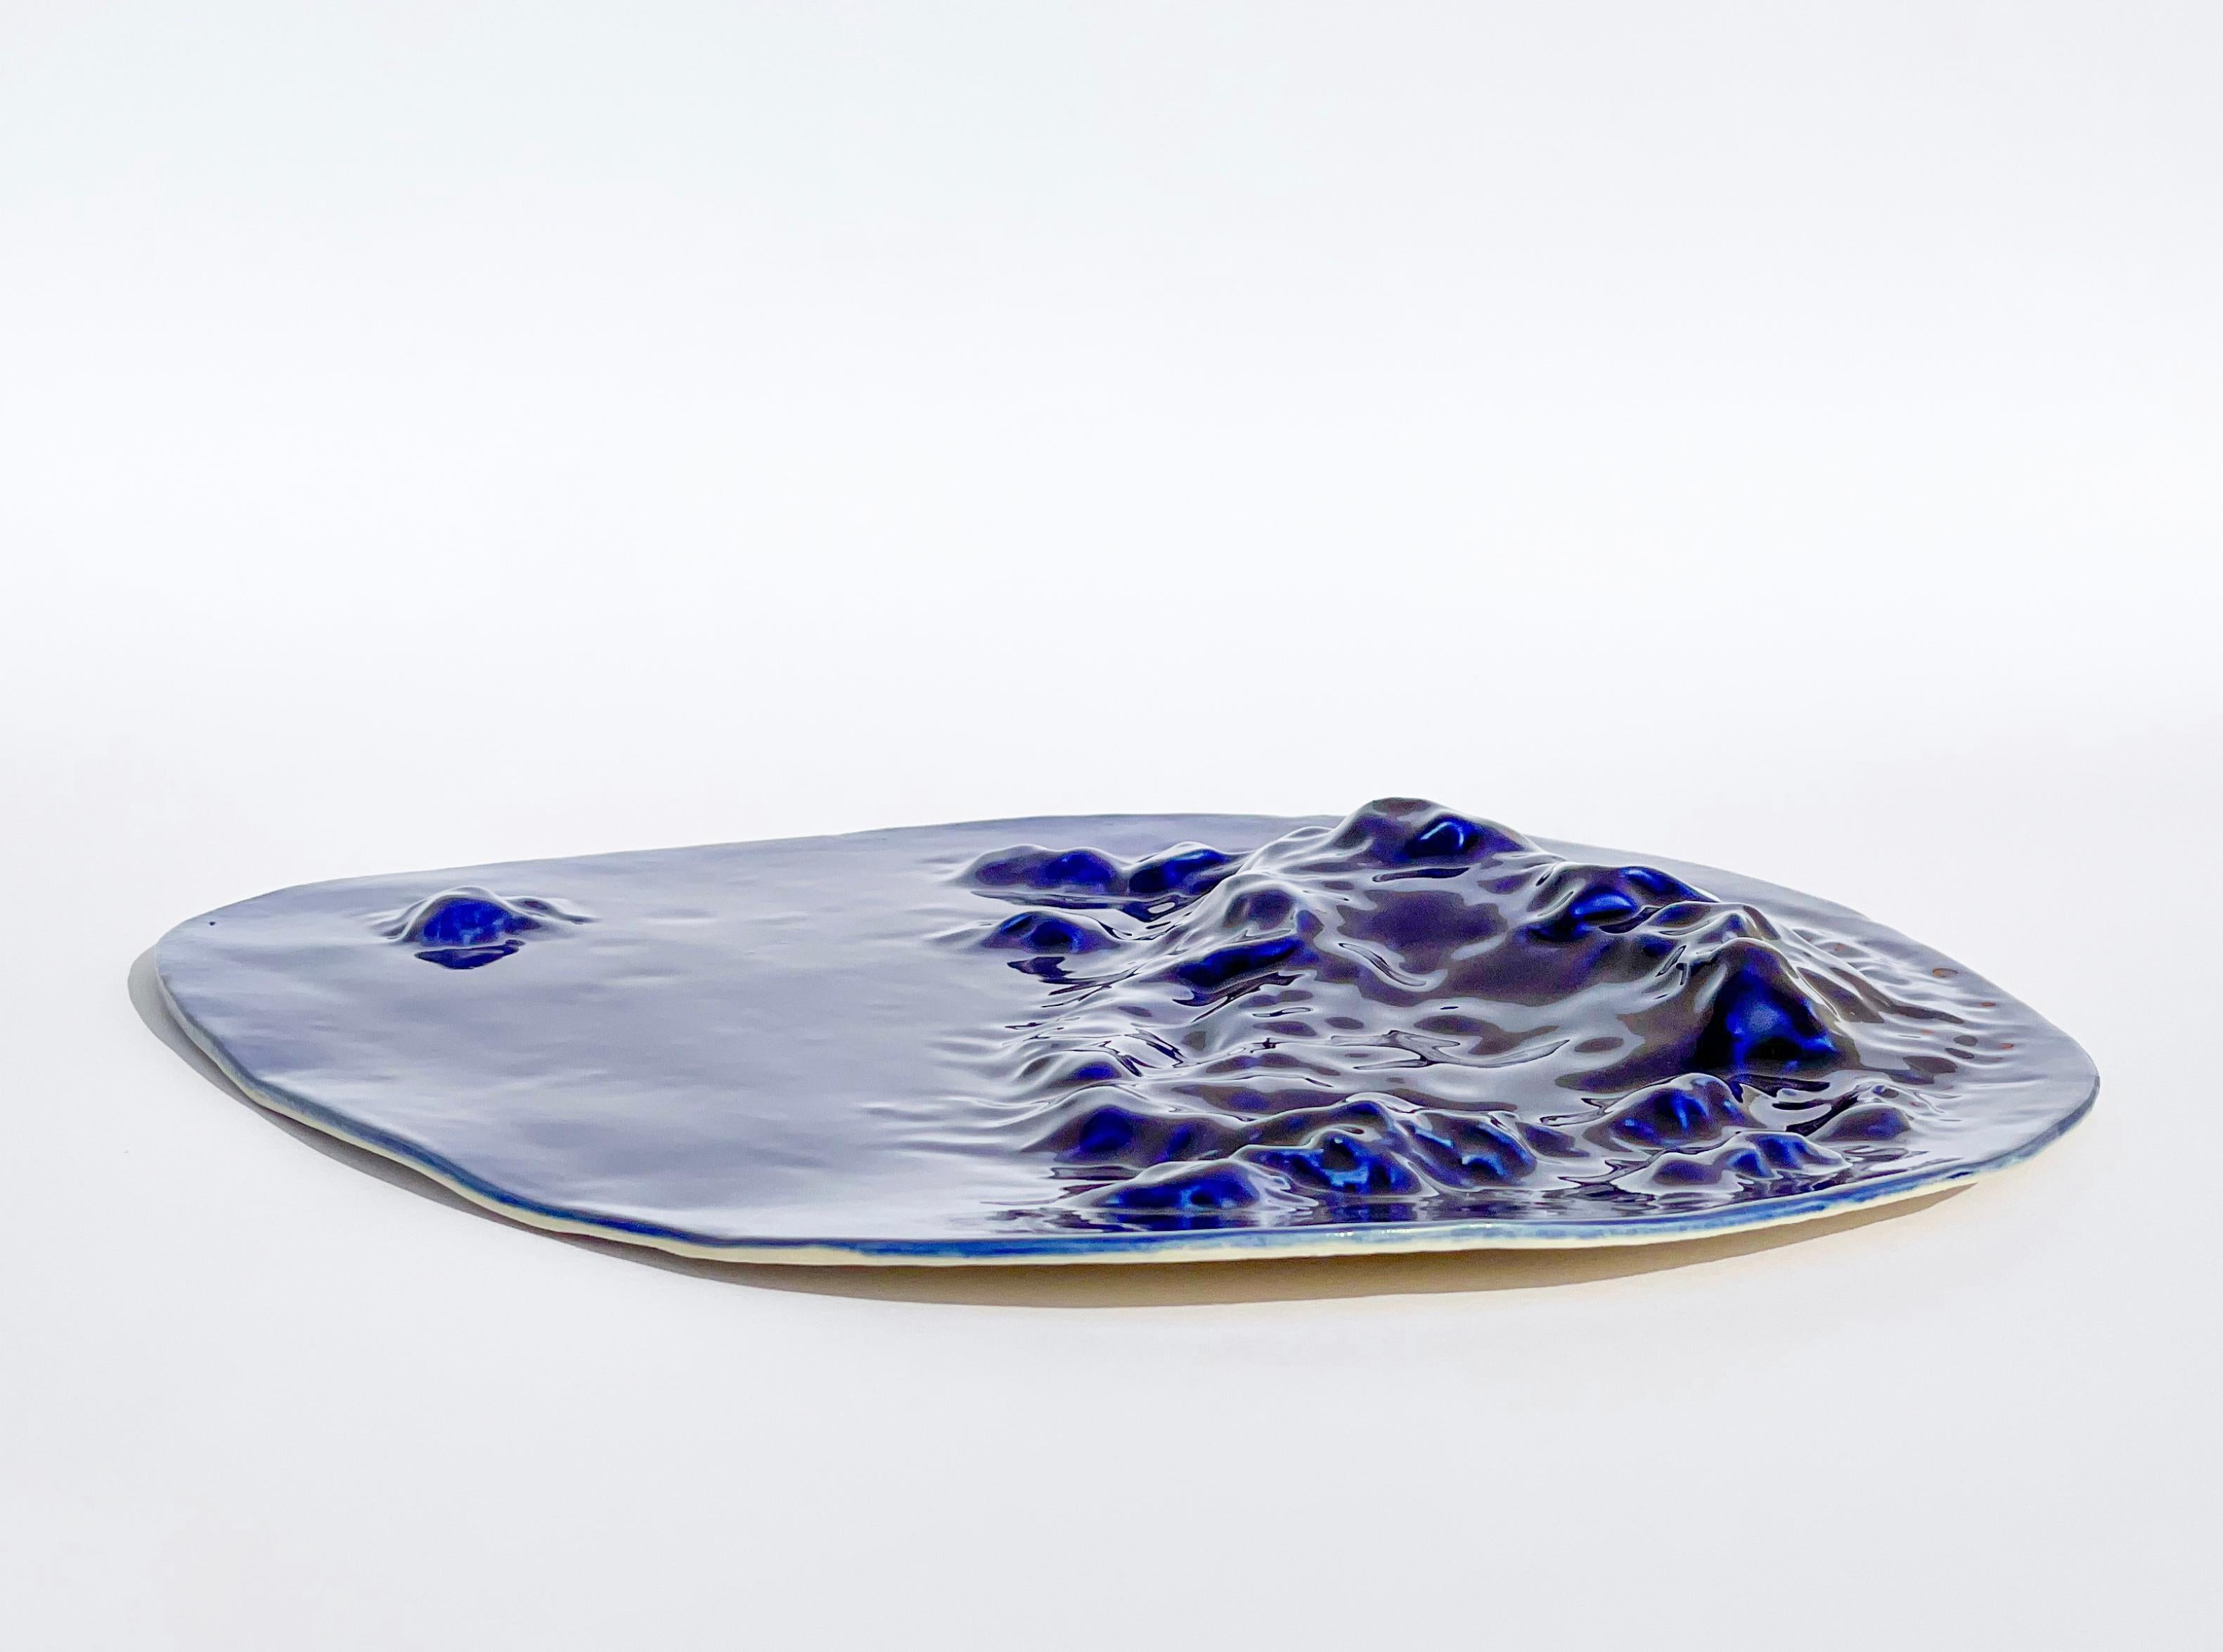 Glazed Unique Sculptural 'Gongshi' Plates N0.11 Objet d'Art Cobalt Blue For Sale